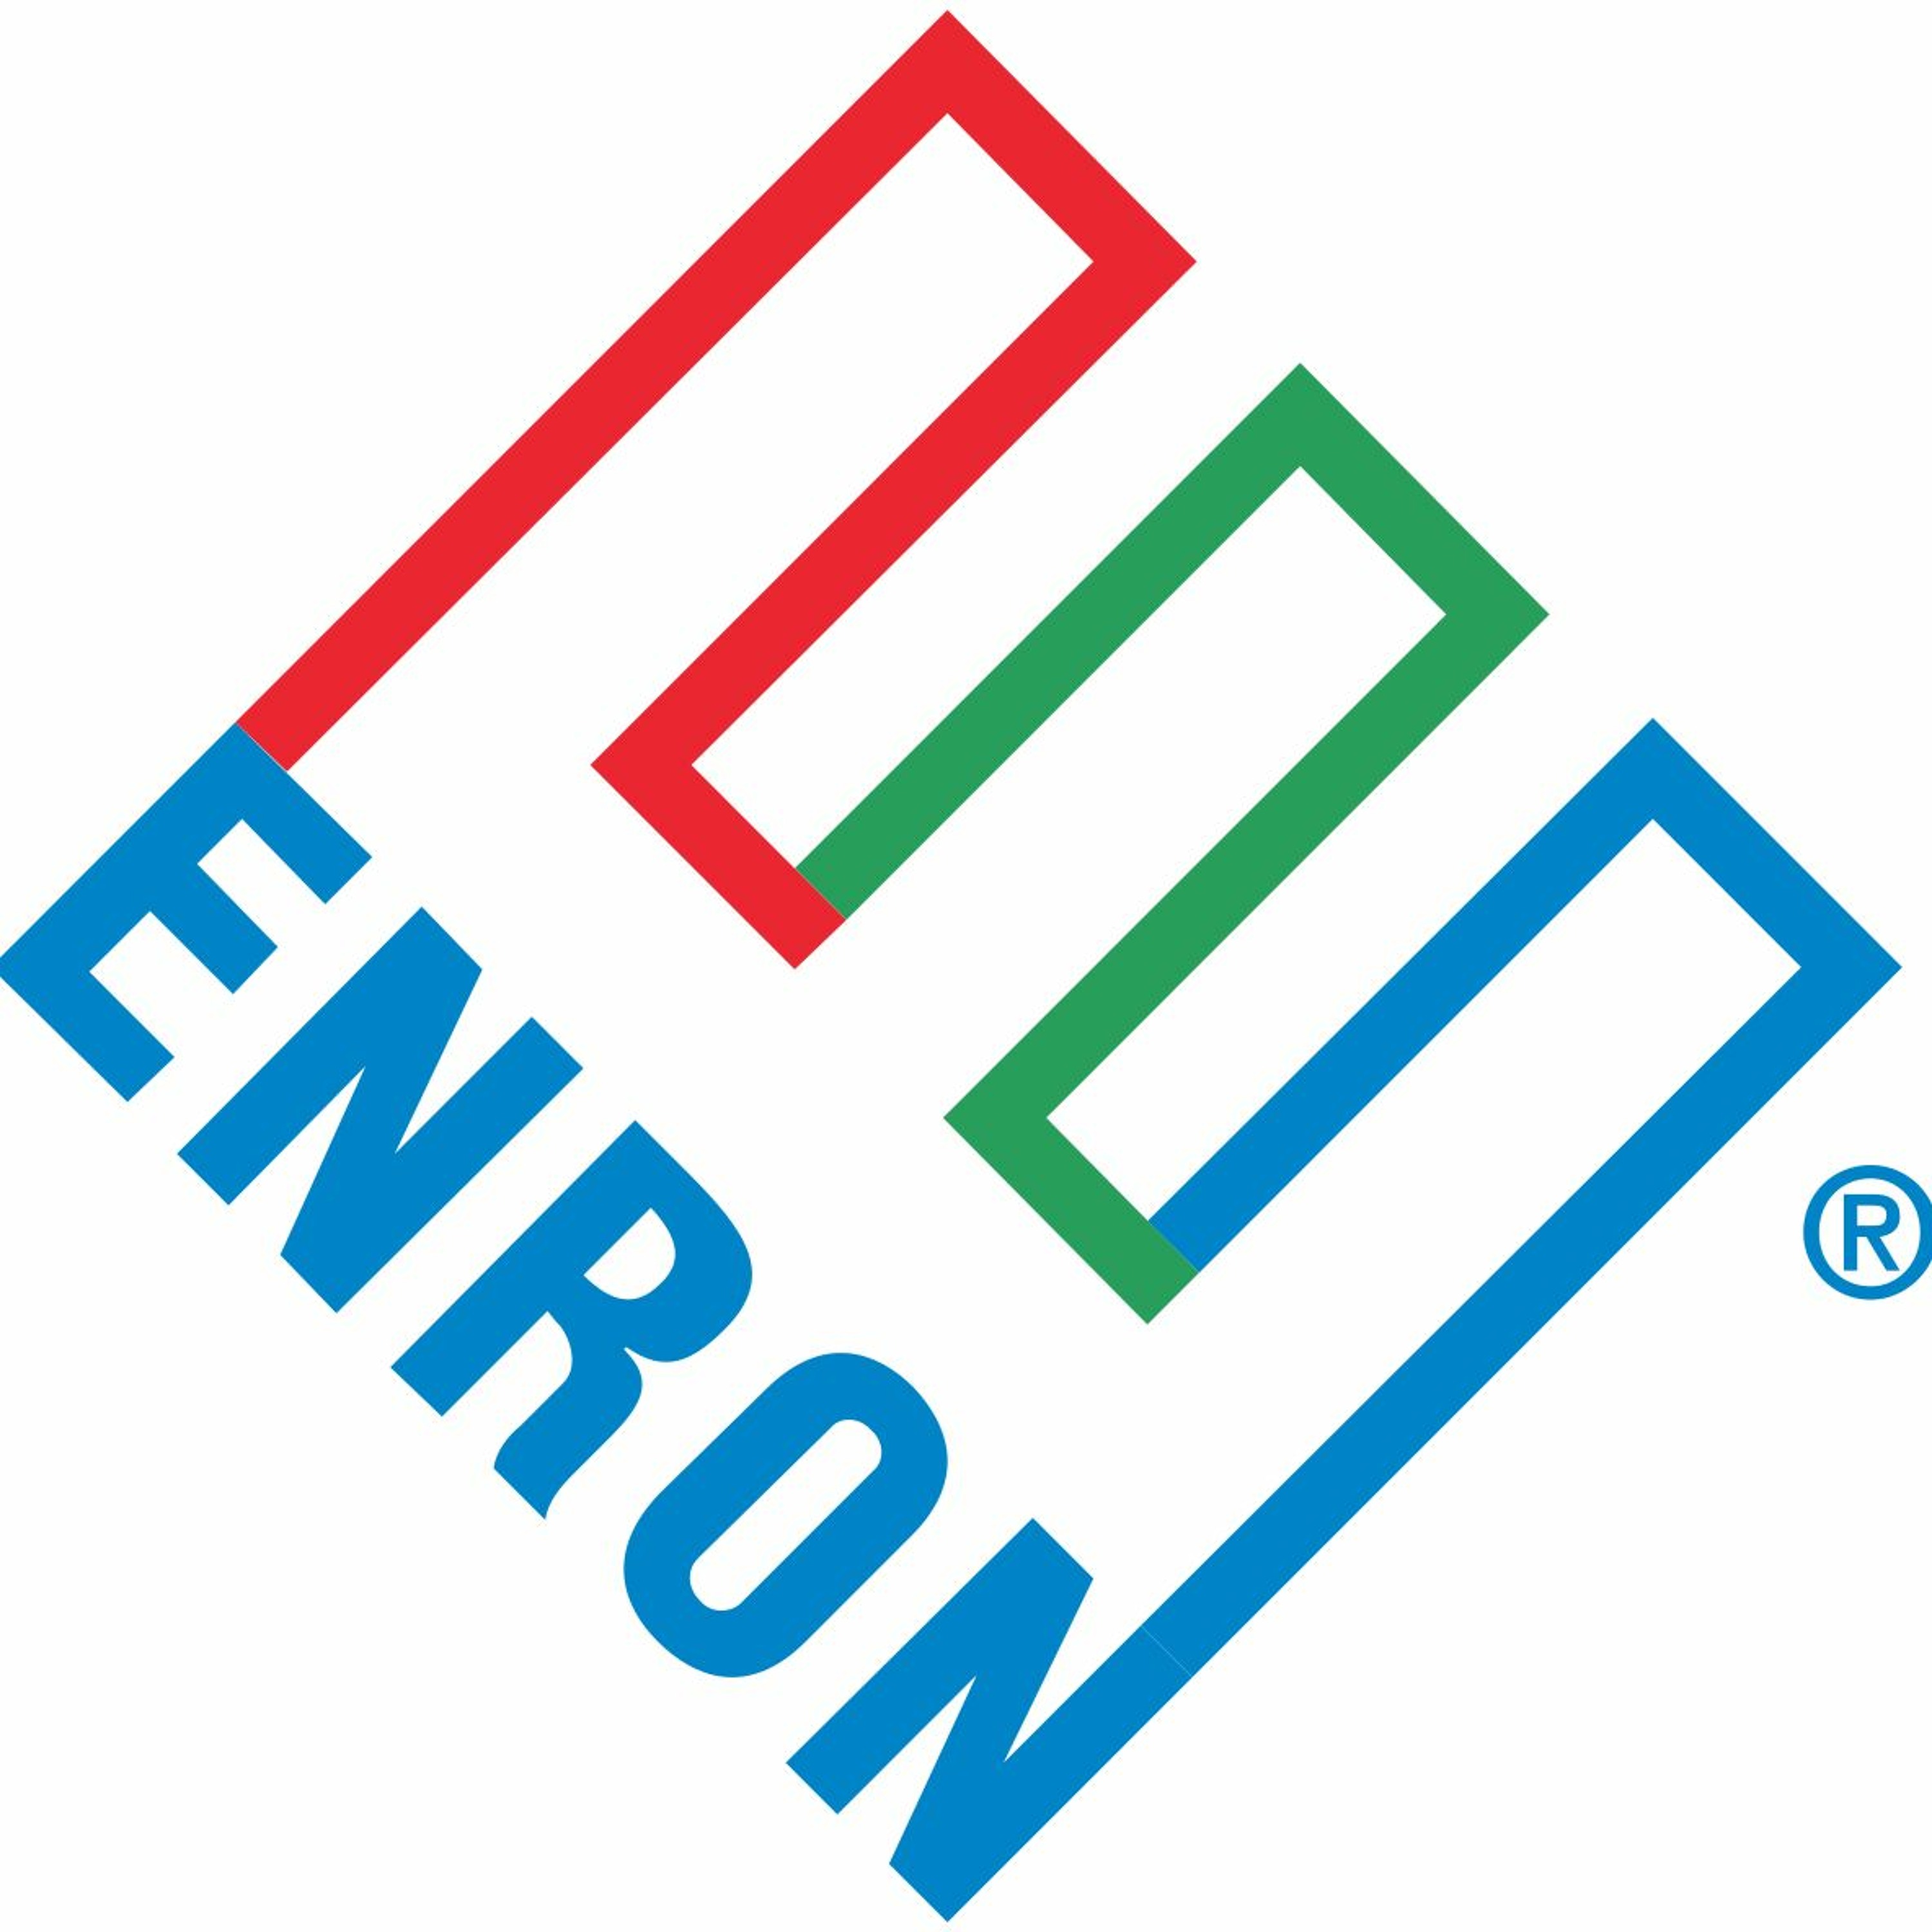 #14 Enron